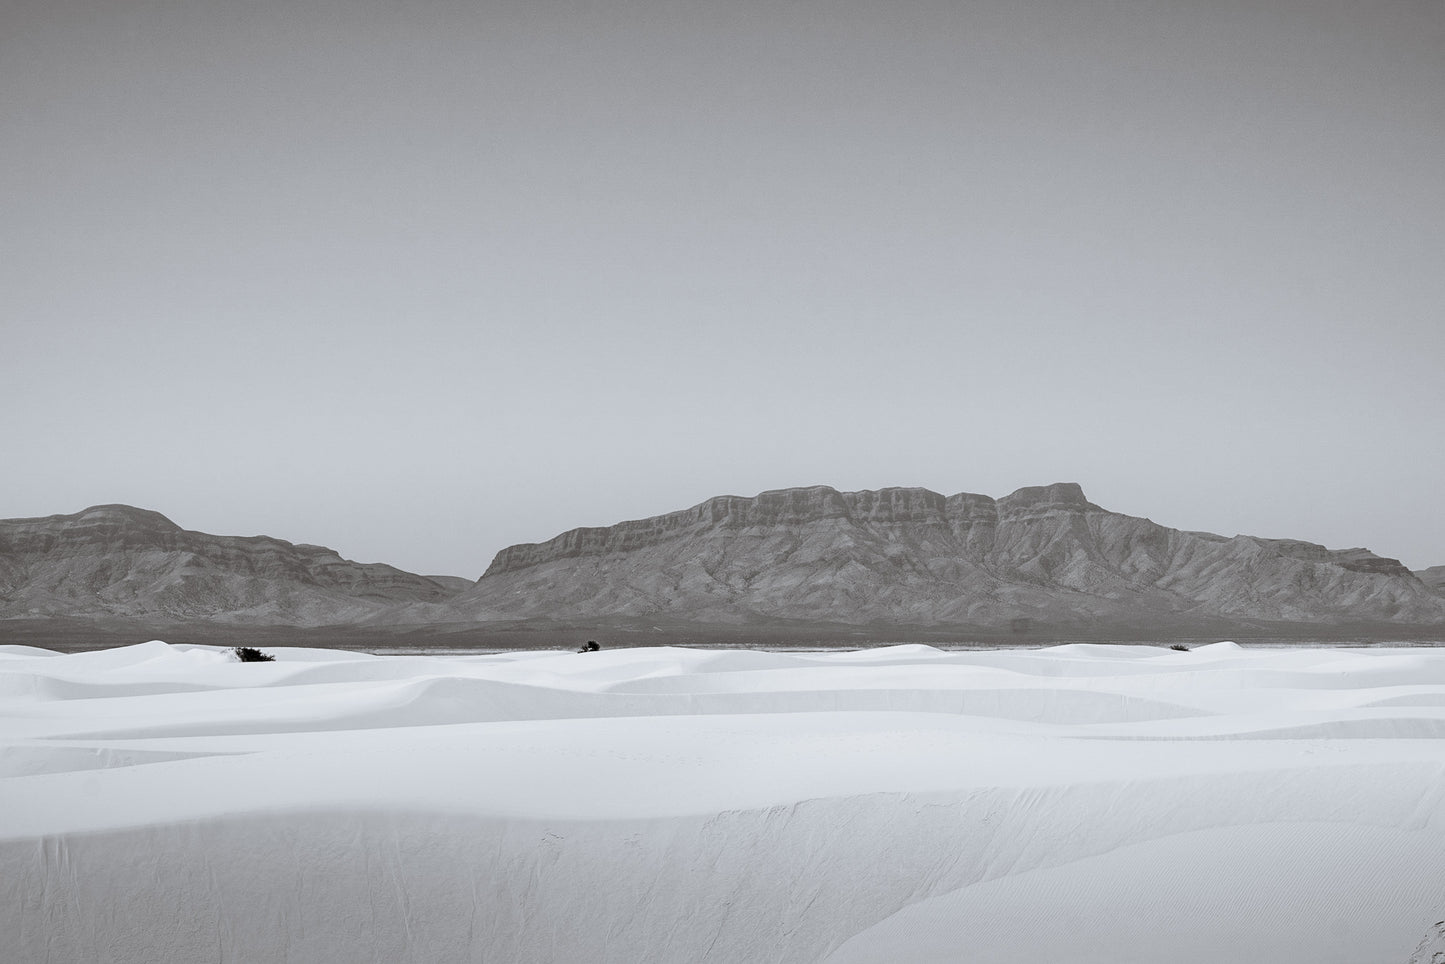 White Sands Black & White II